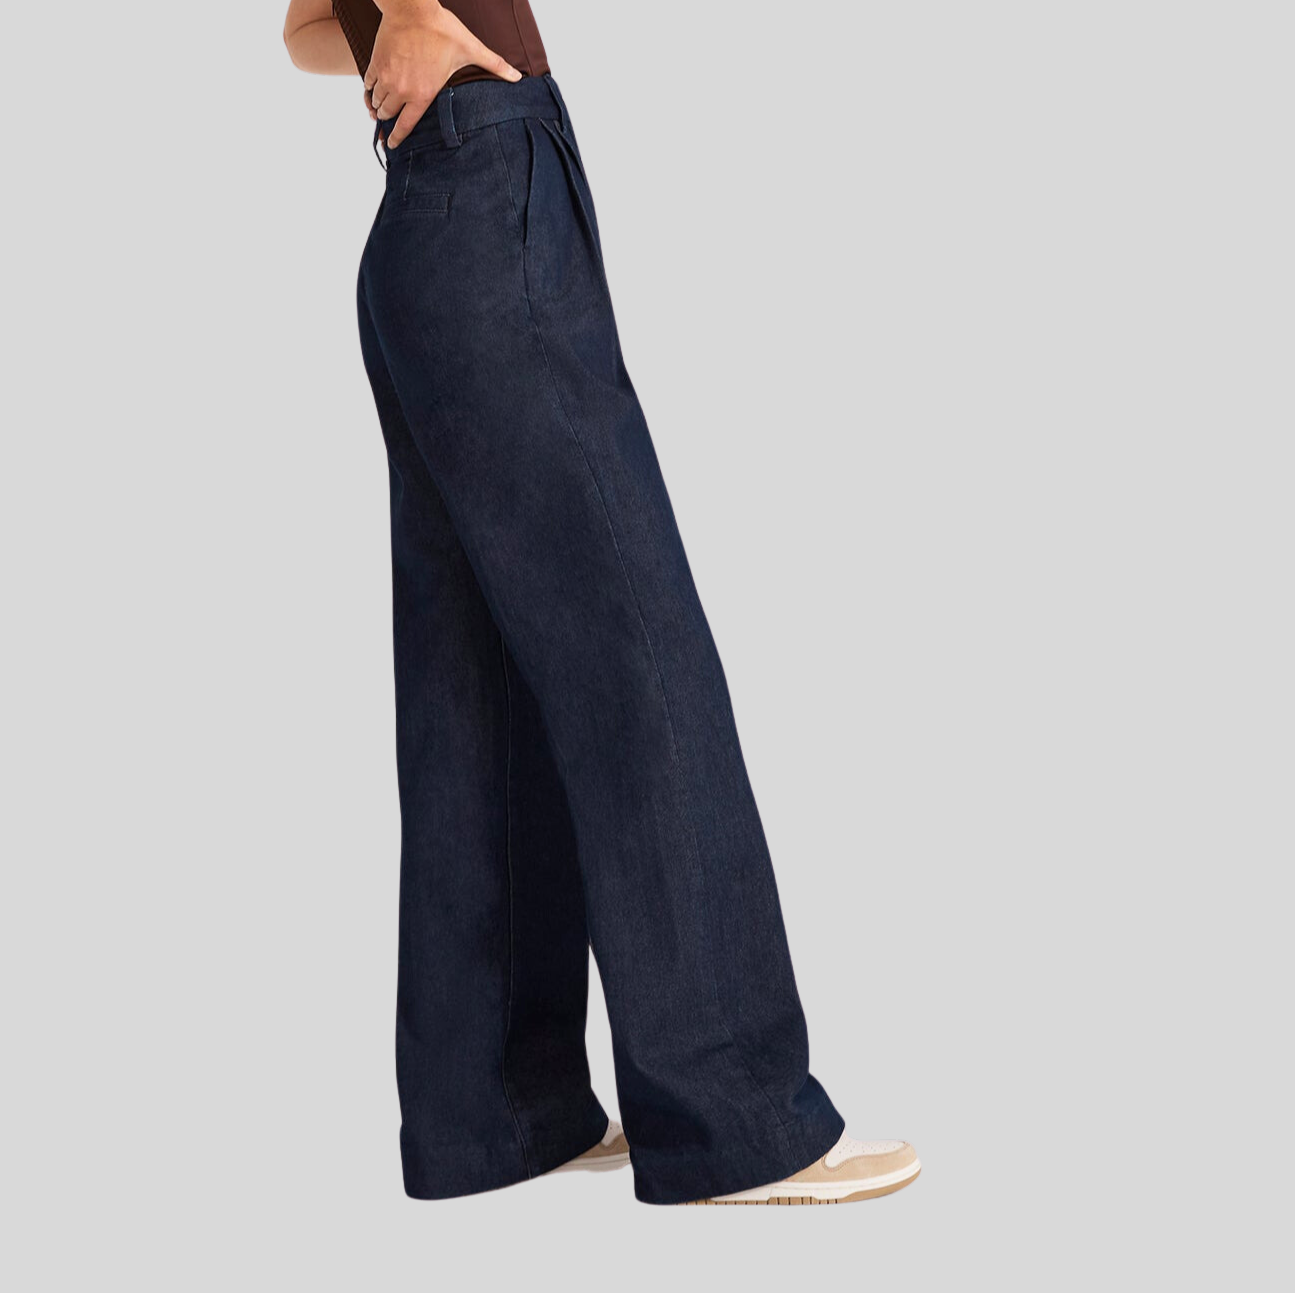 Gotstyle Fashion - Favorite Daughter Pants Wide Leg High Waist Front Pleat Denim Pants - Blue